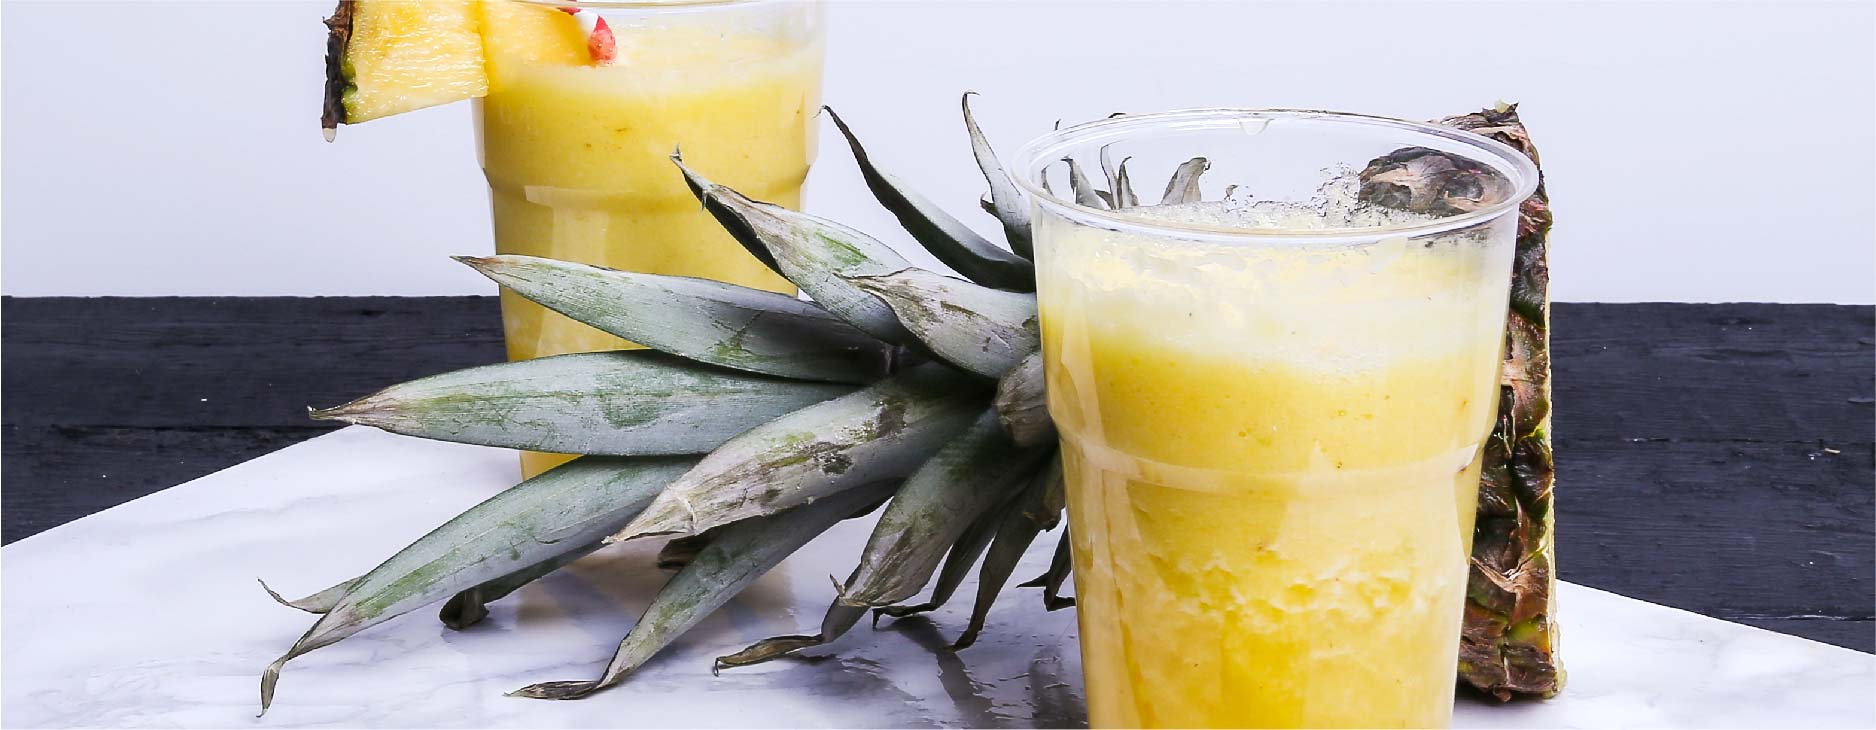 Le jus d'ananas peut réduire le gonflement et l'inflammation après l'extraction des dents de sagesse